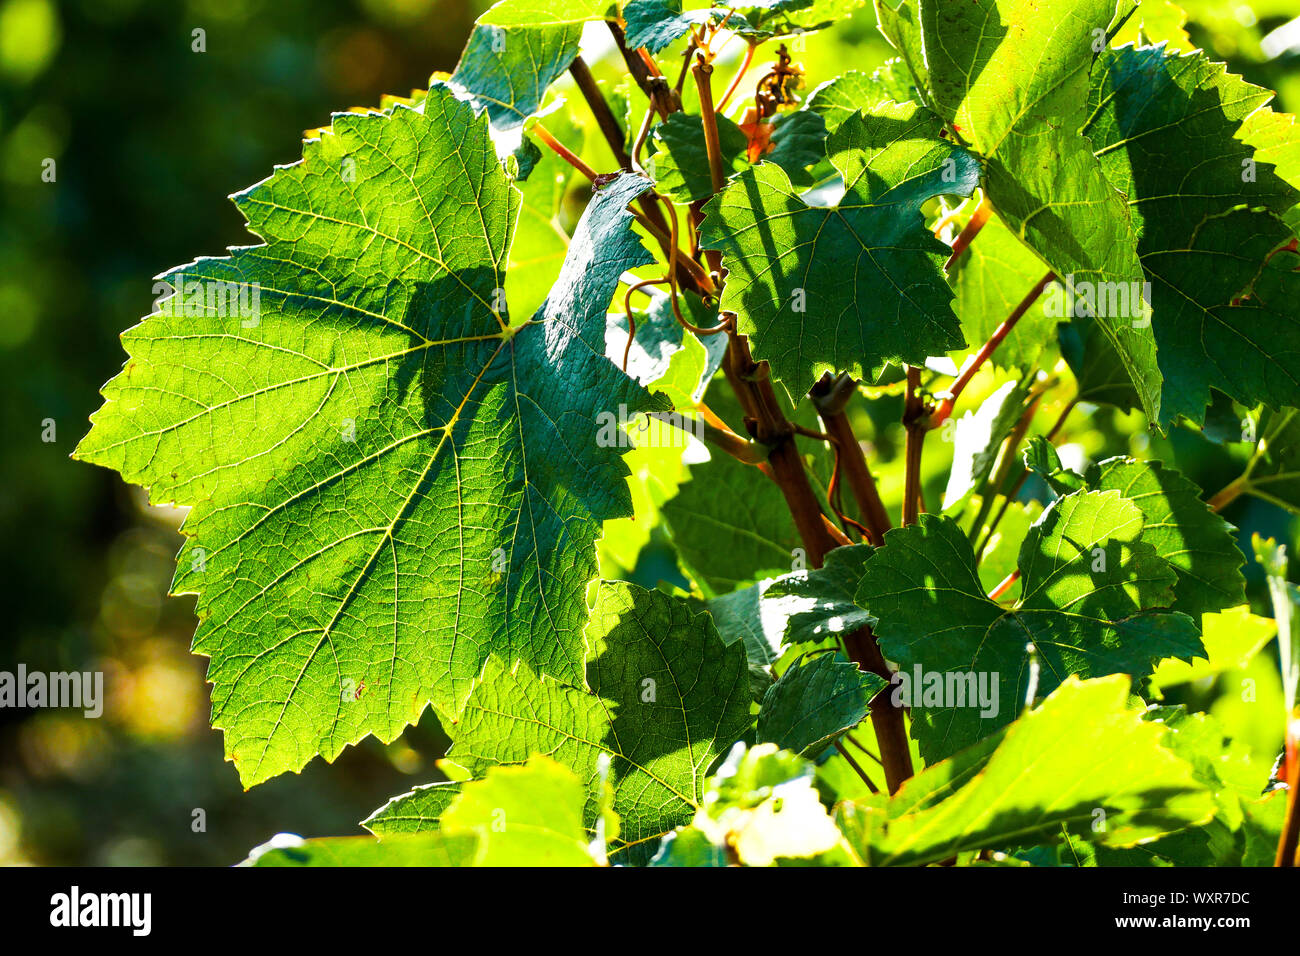 Les feuilles de vigne verte dans un rétroéclairage, Vergisson, Bourgogne, Saône-et-Loire, région Bourgogne-Franche-Comté, France Banque D'Images